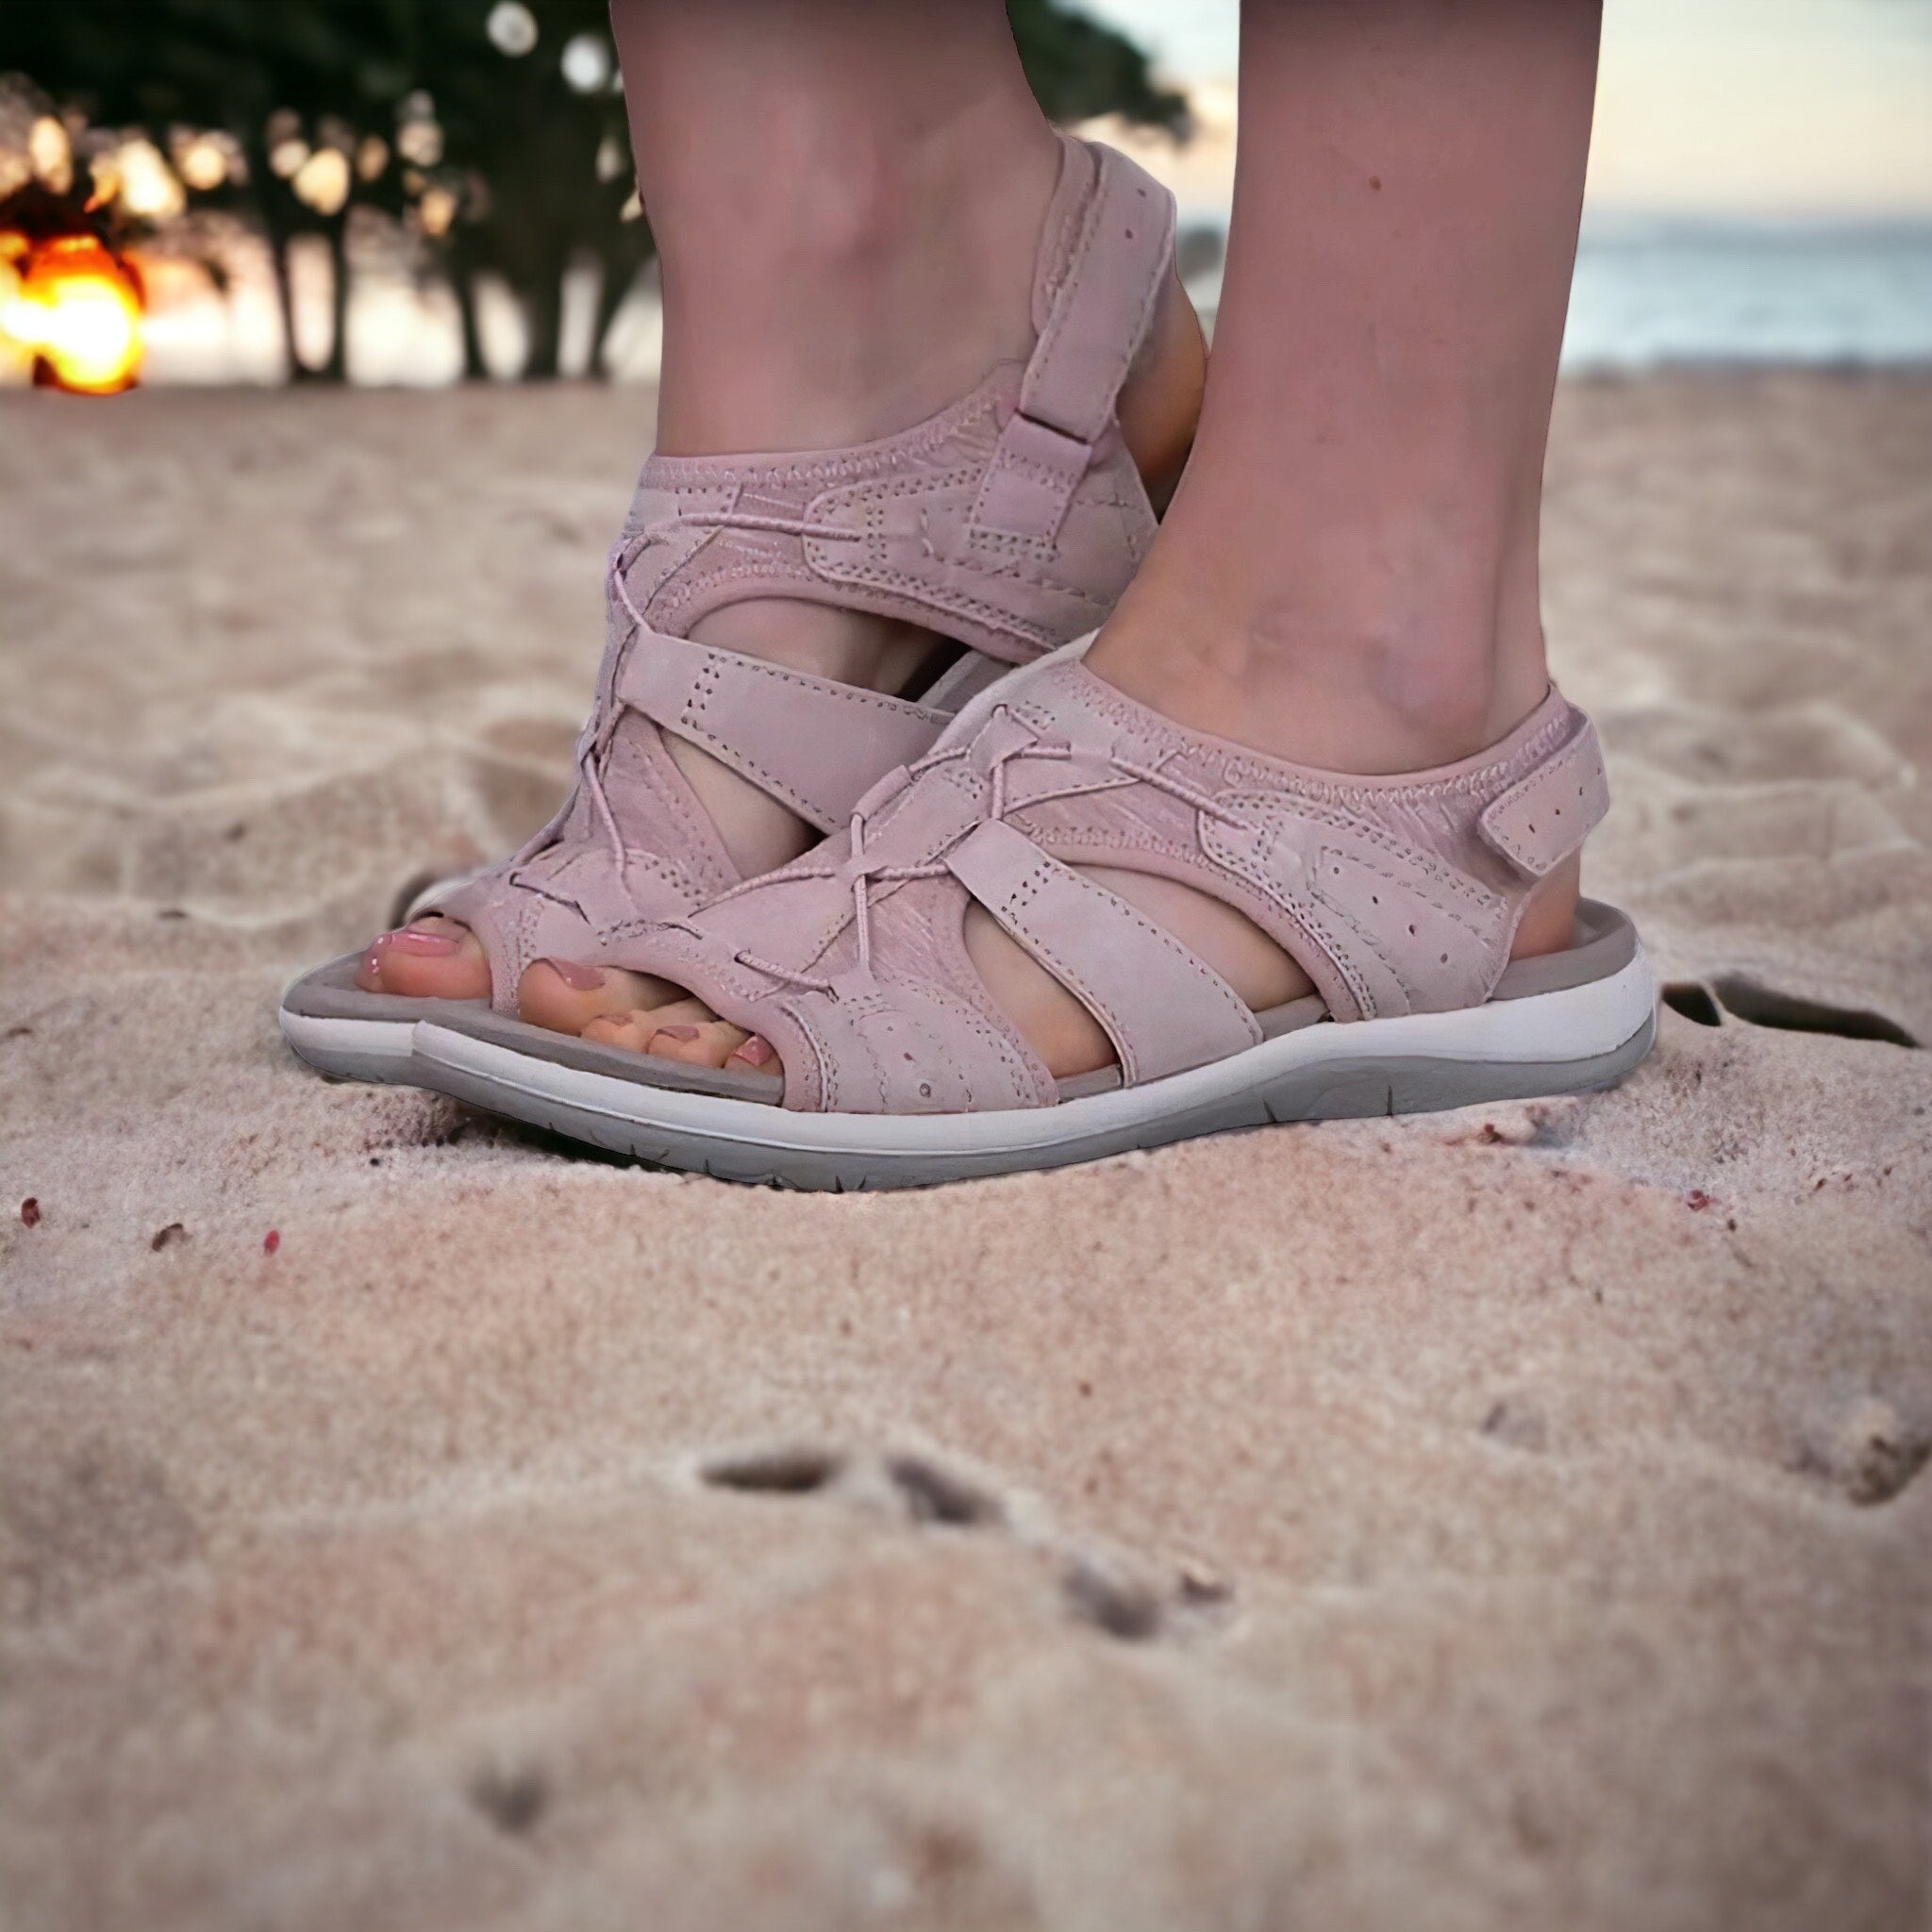 GS Beach Sandaal | Comfortabele zomersandalen met open neus voor vrouwen